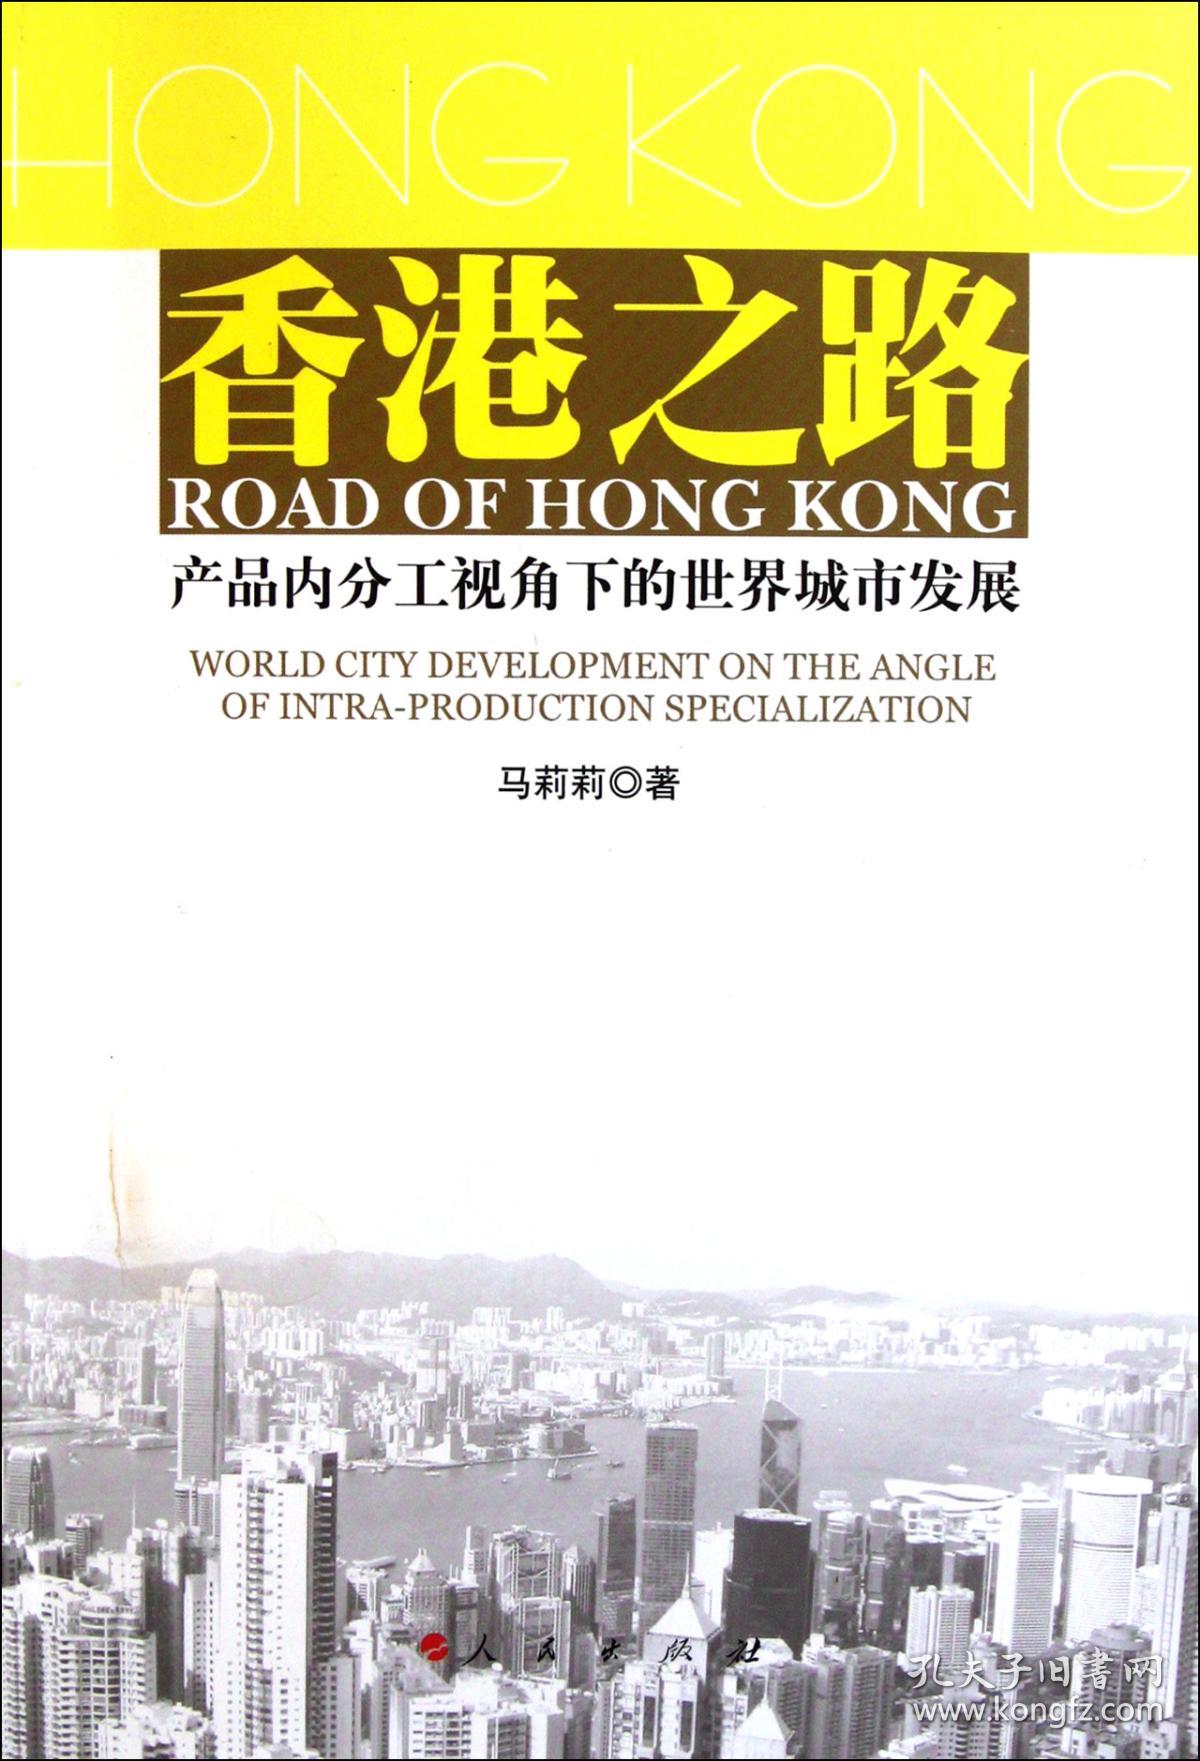 全新正版 香港之路(产品内分工视角下的世界城市发展) 马莉莉 9787010101354 人民